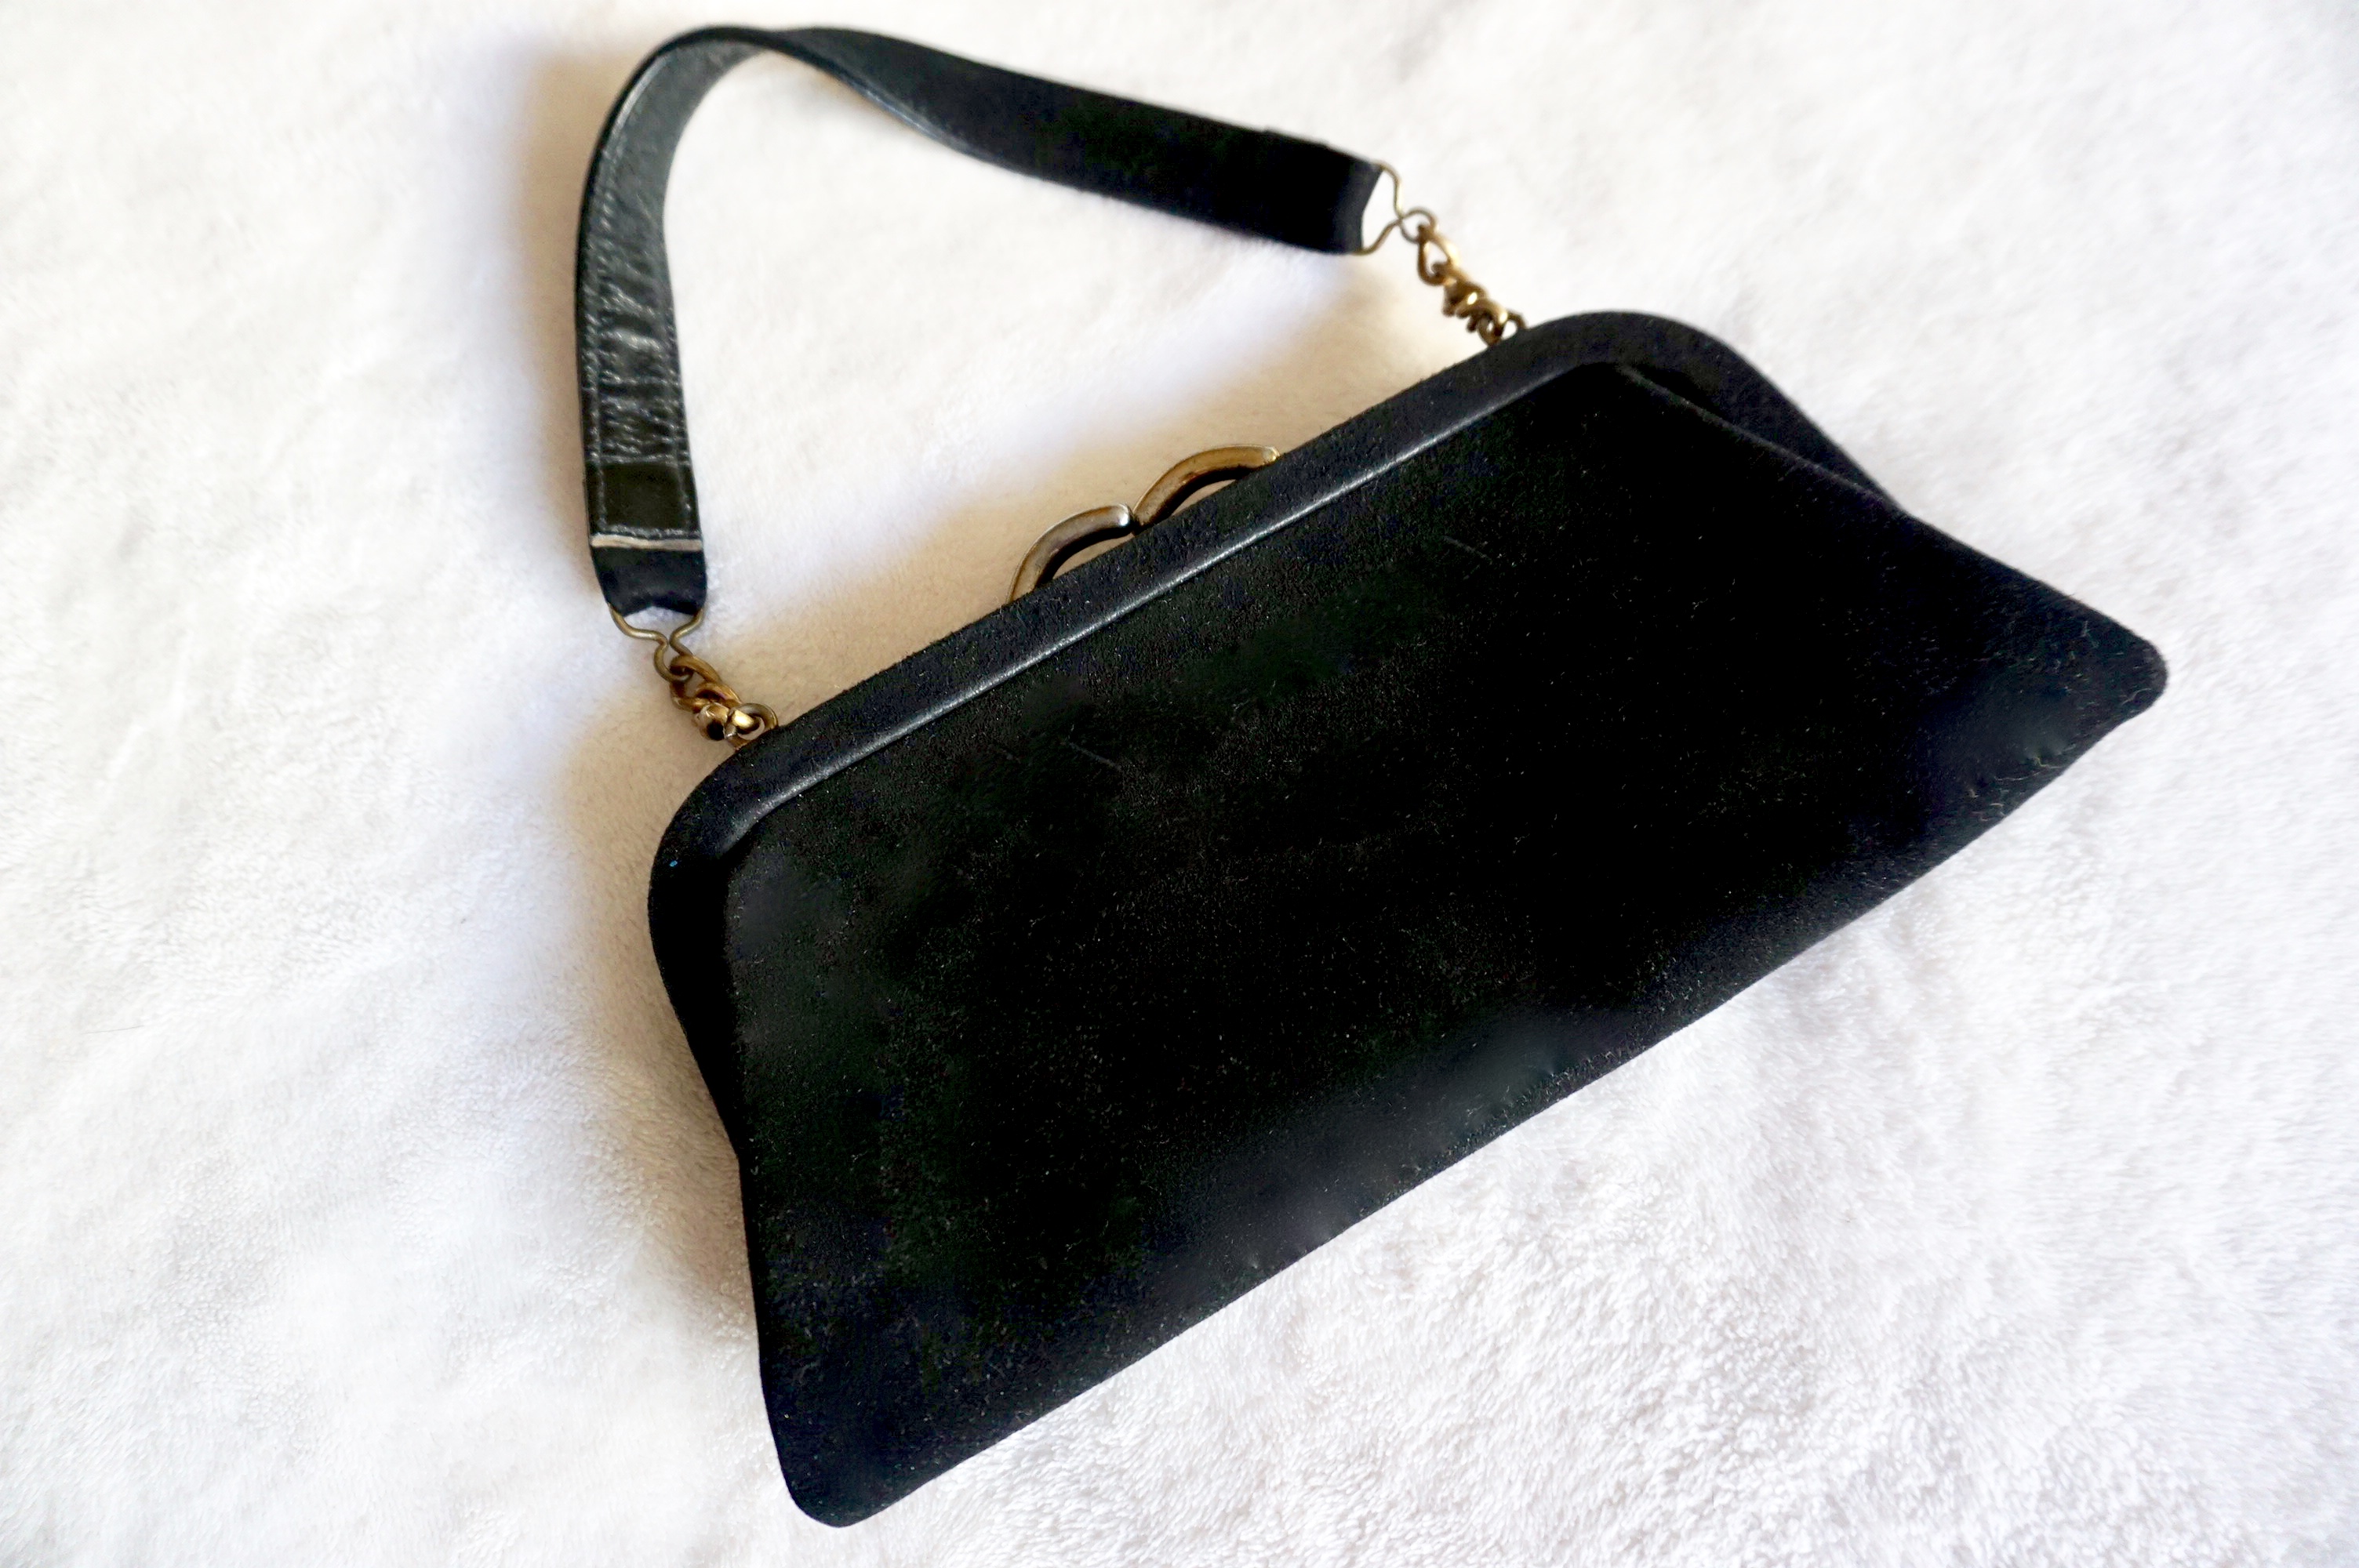 Vintage Christian Dior dark brown leather shoulder bag with silver